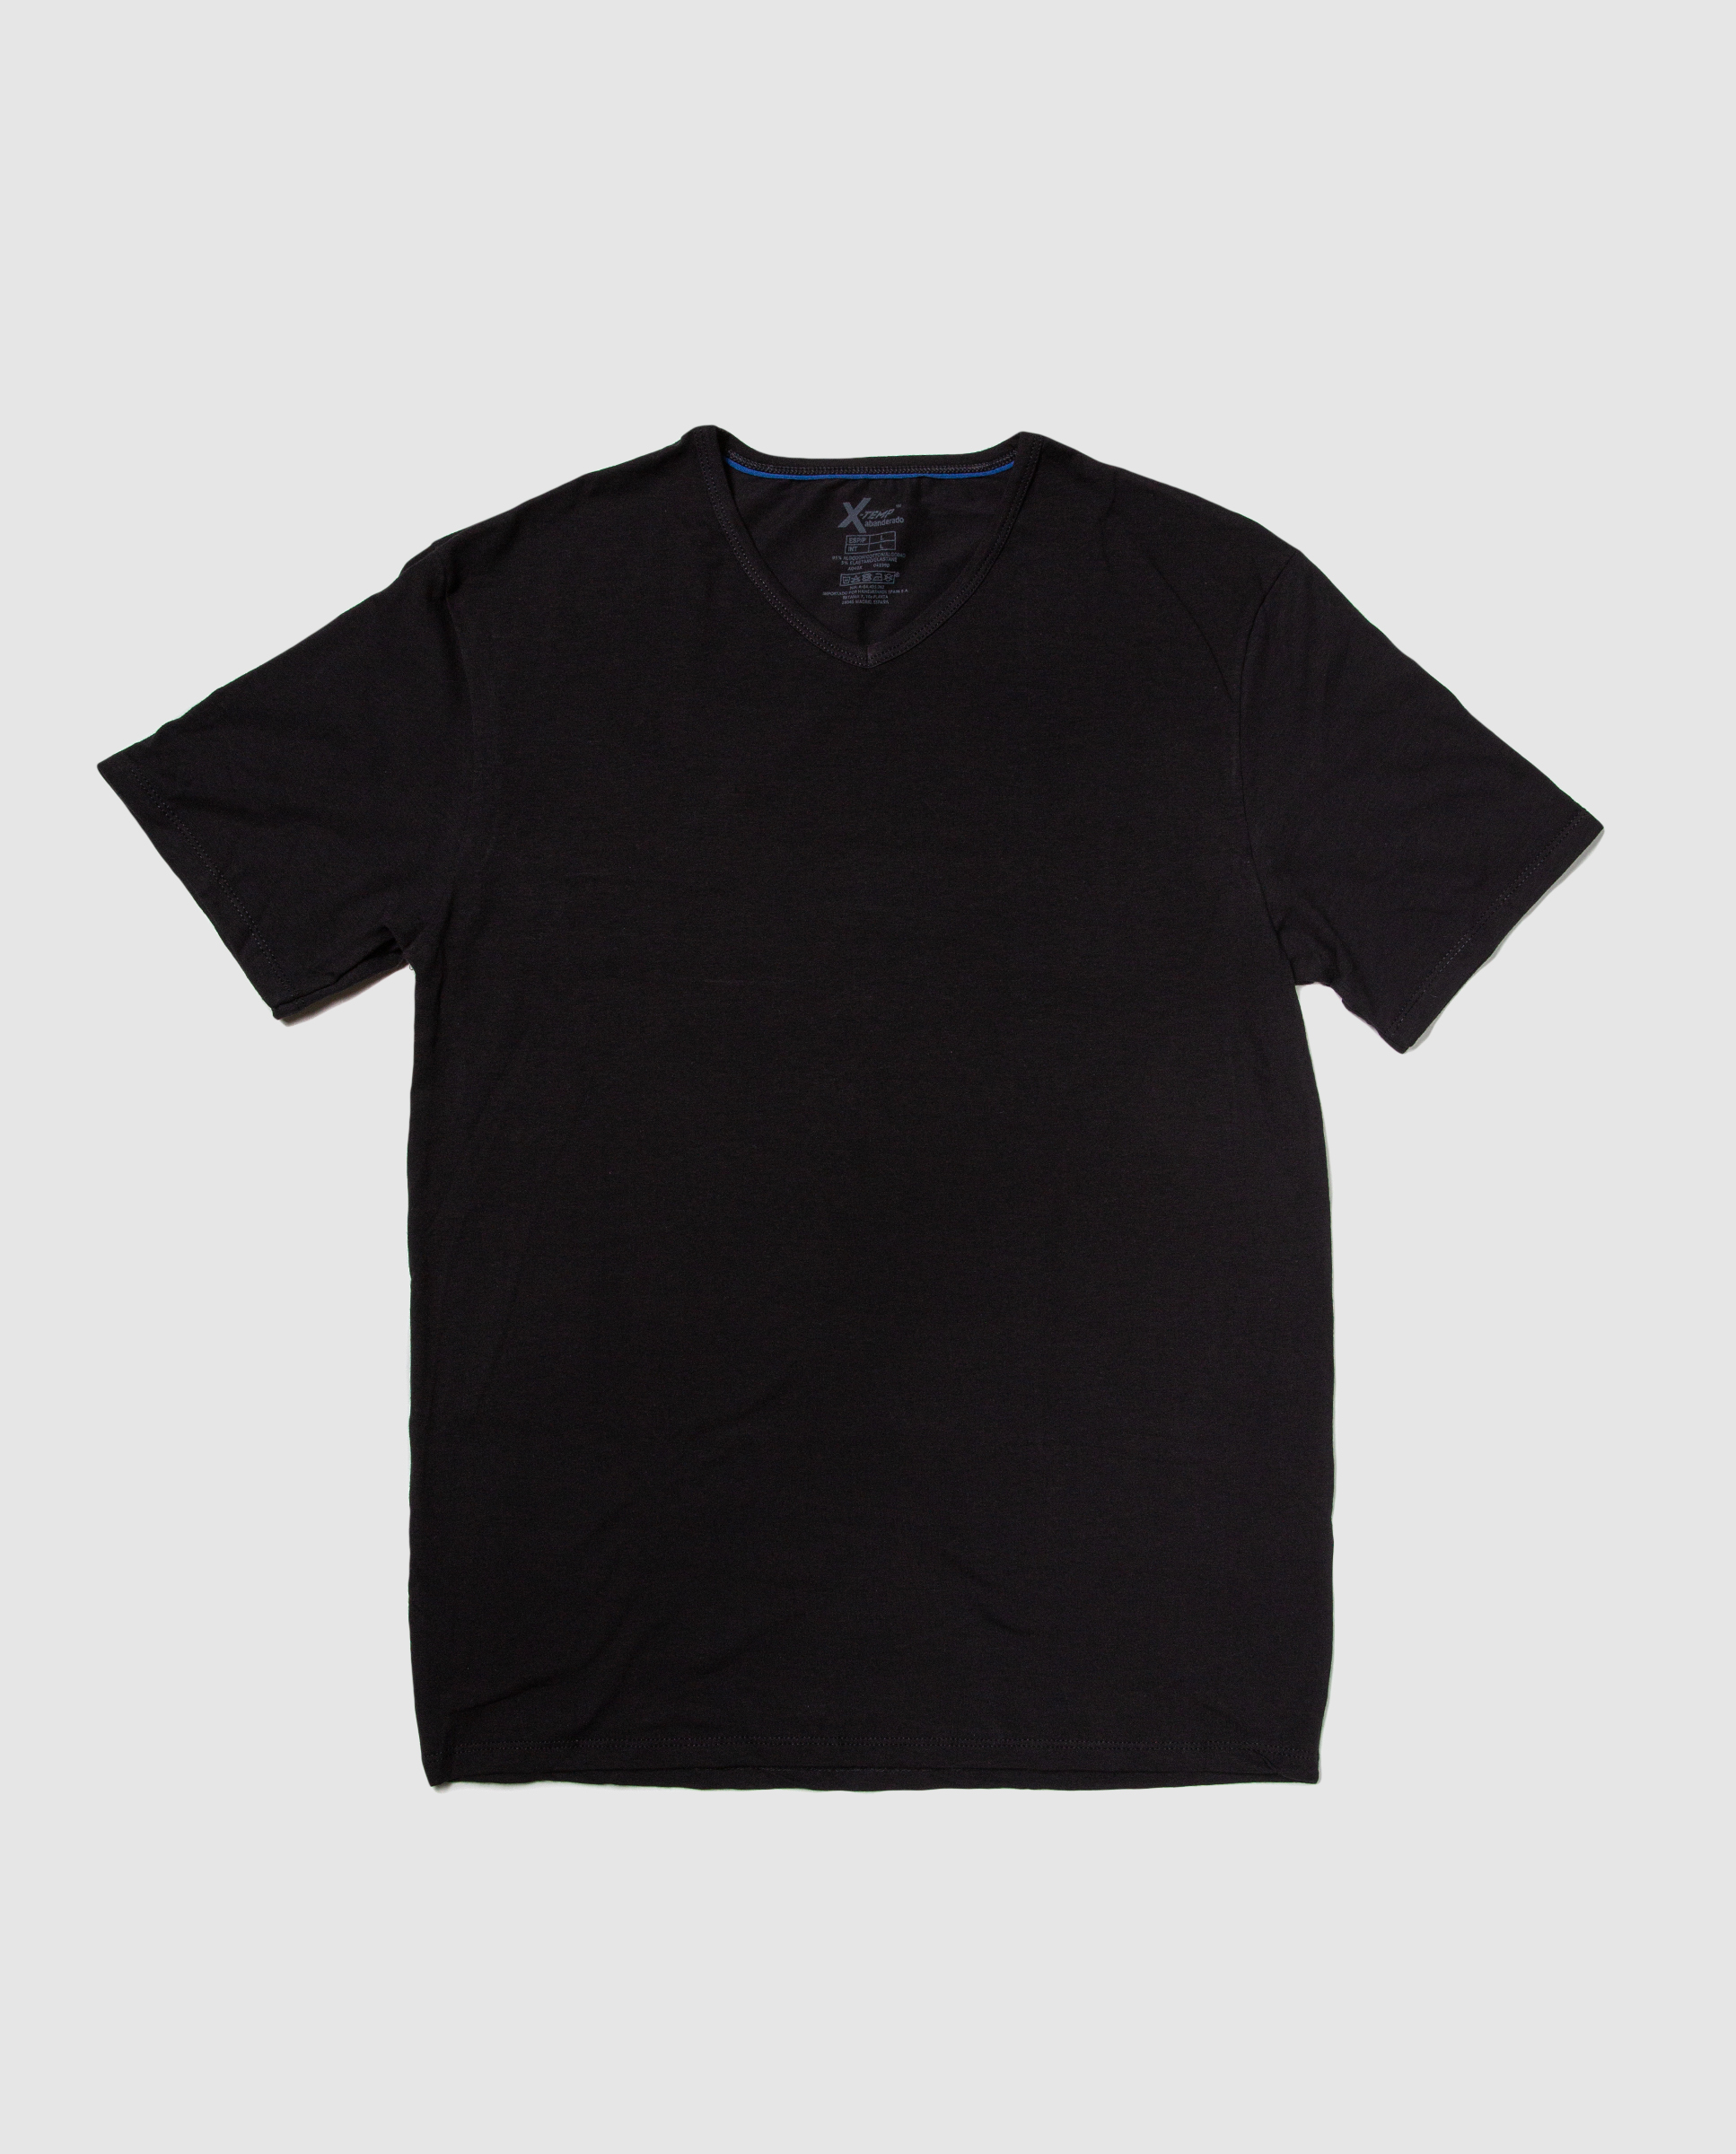 Camiseta interior m/c hombre algodón 100%, AS00306, Abanderado